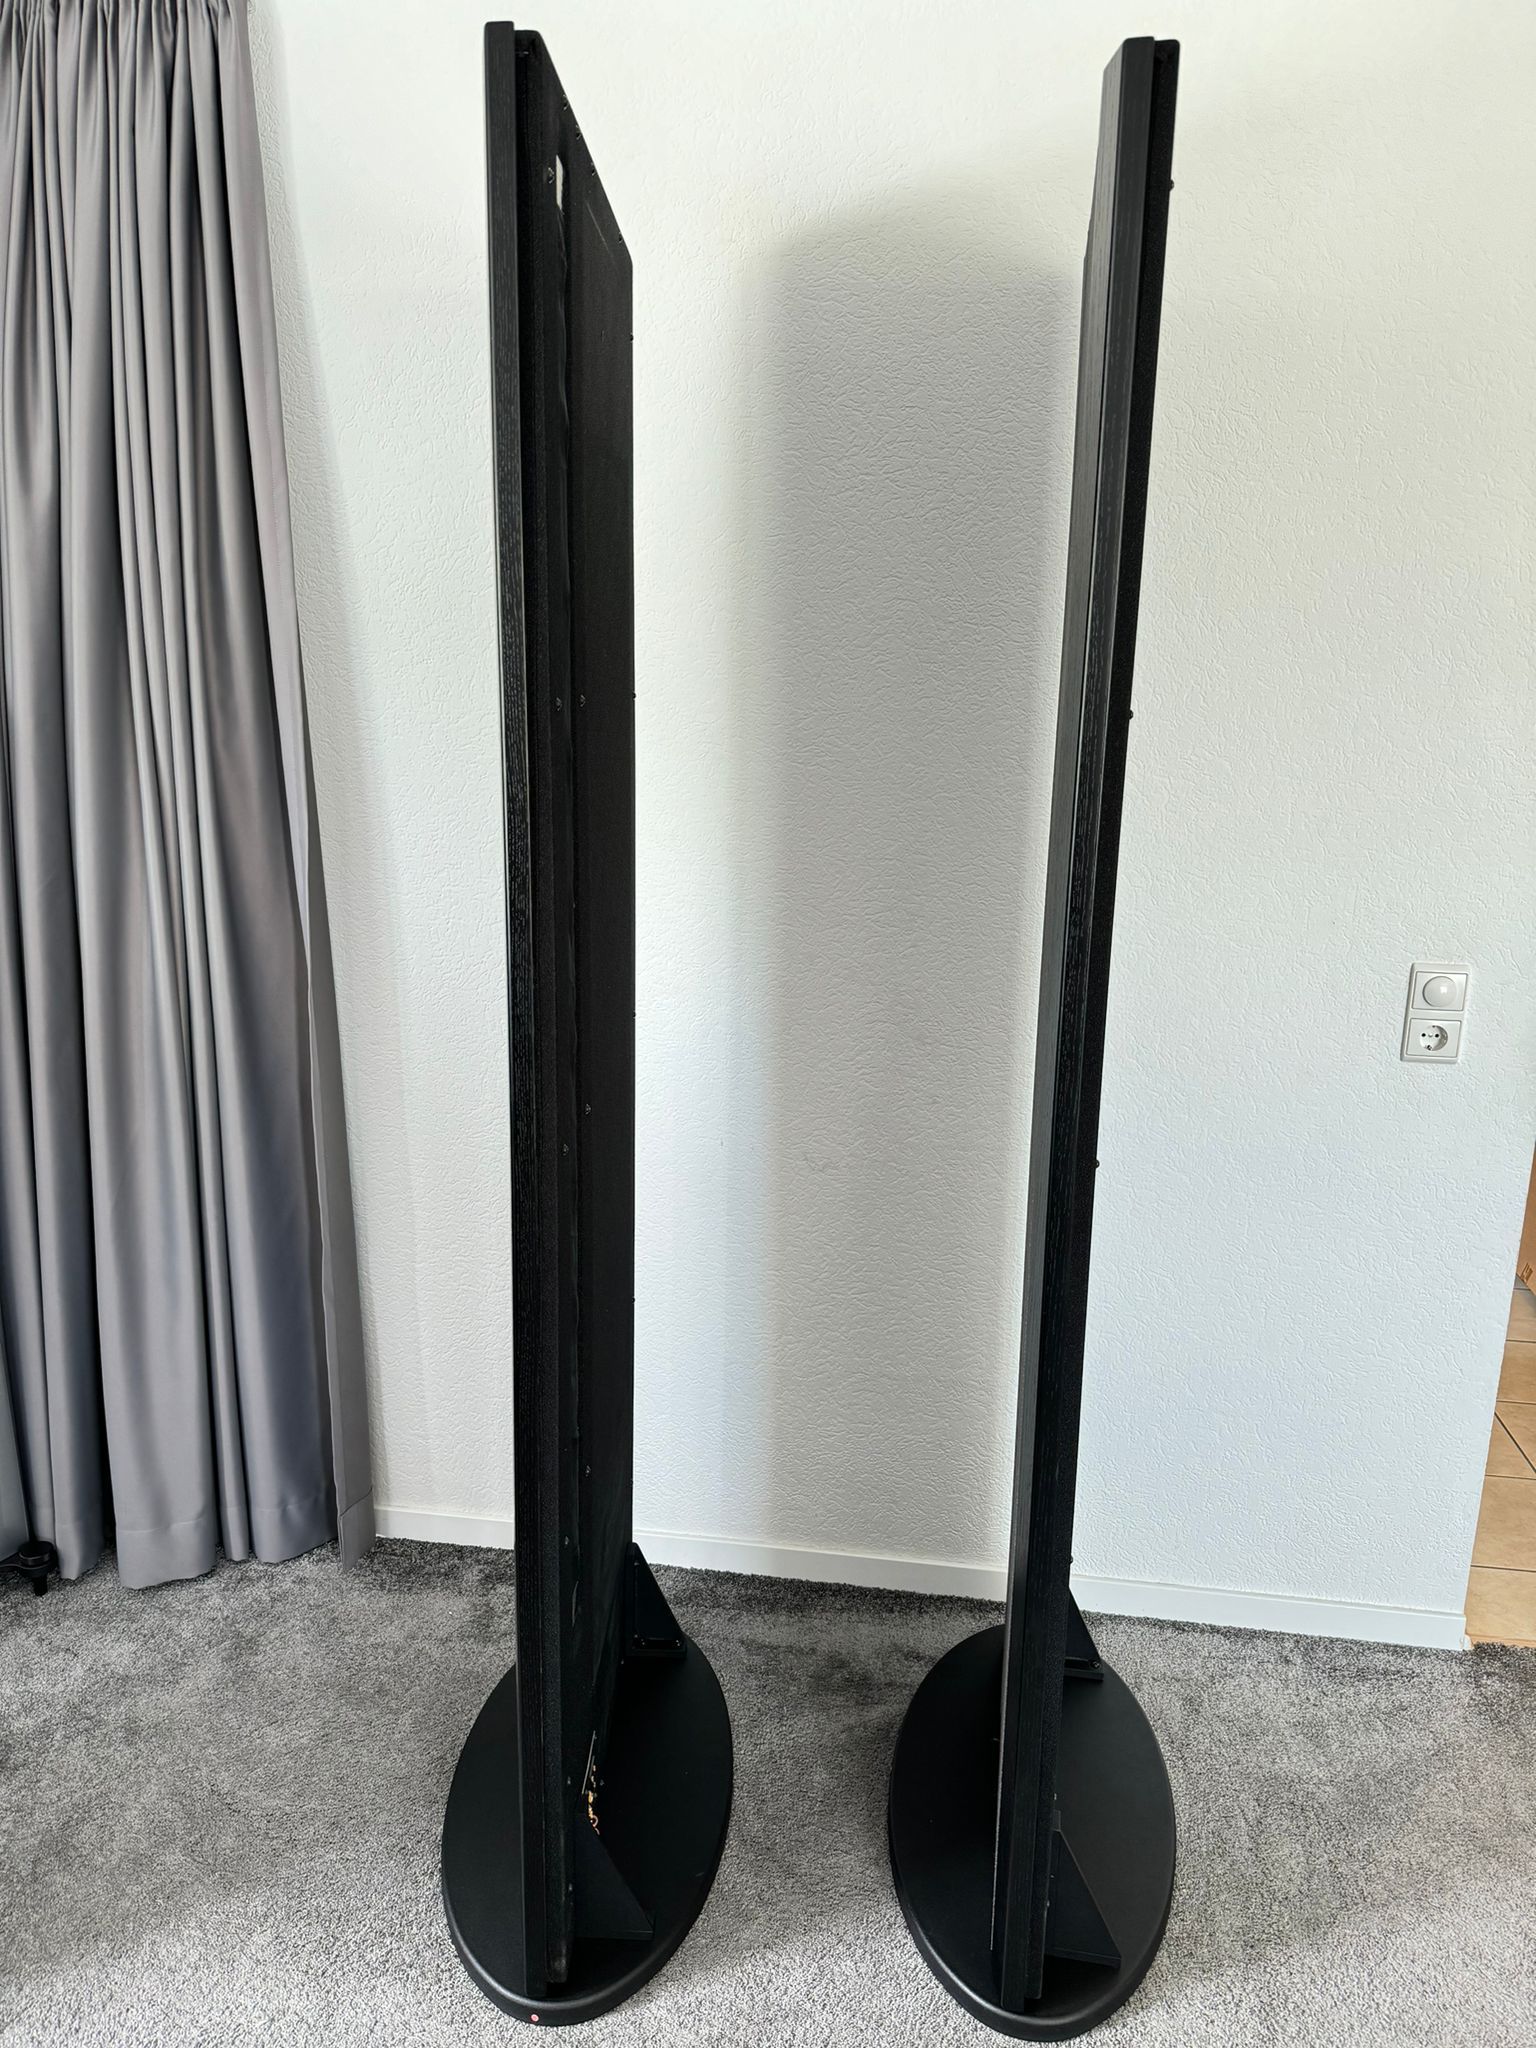 Magnepan 20.7 speakers in black-grey 6